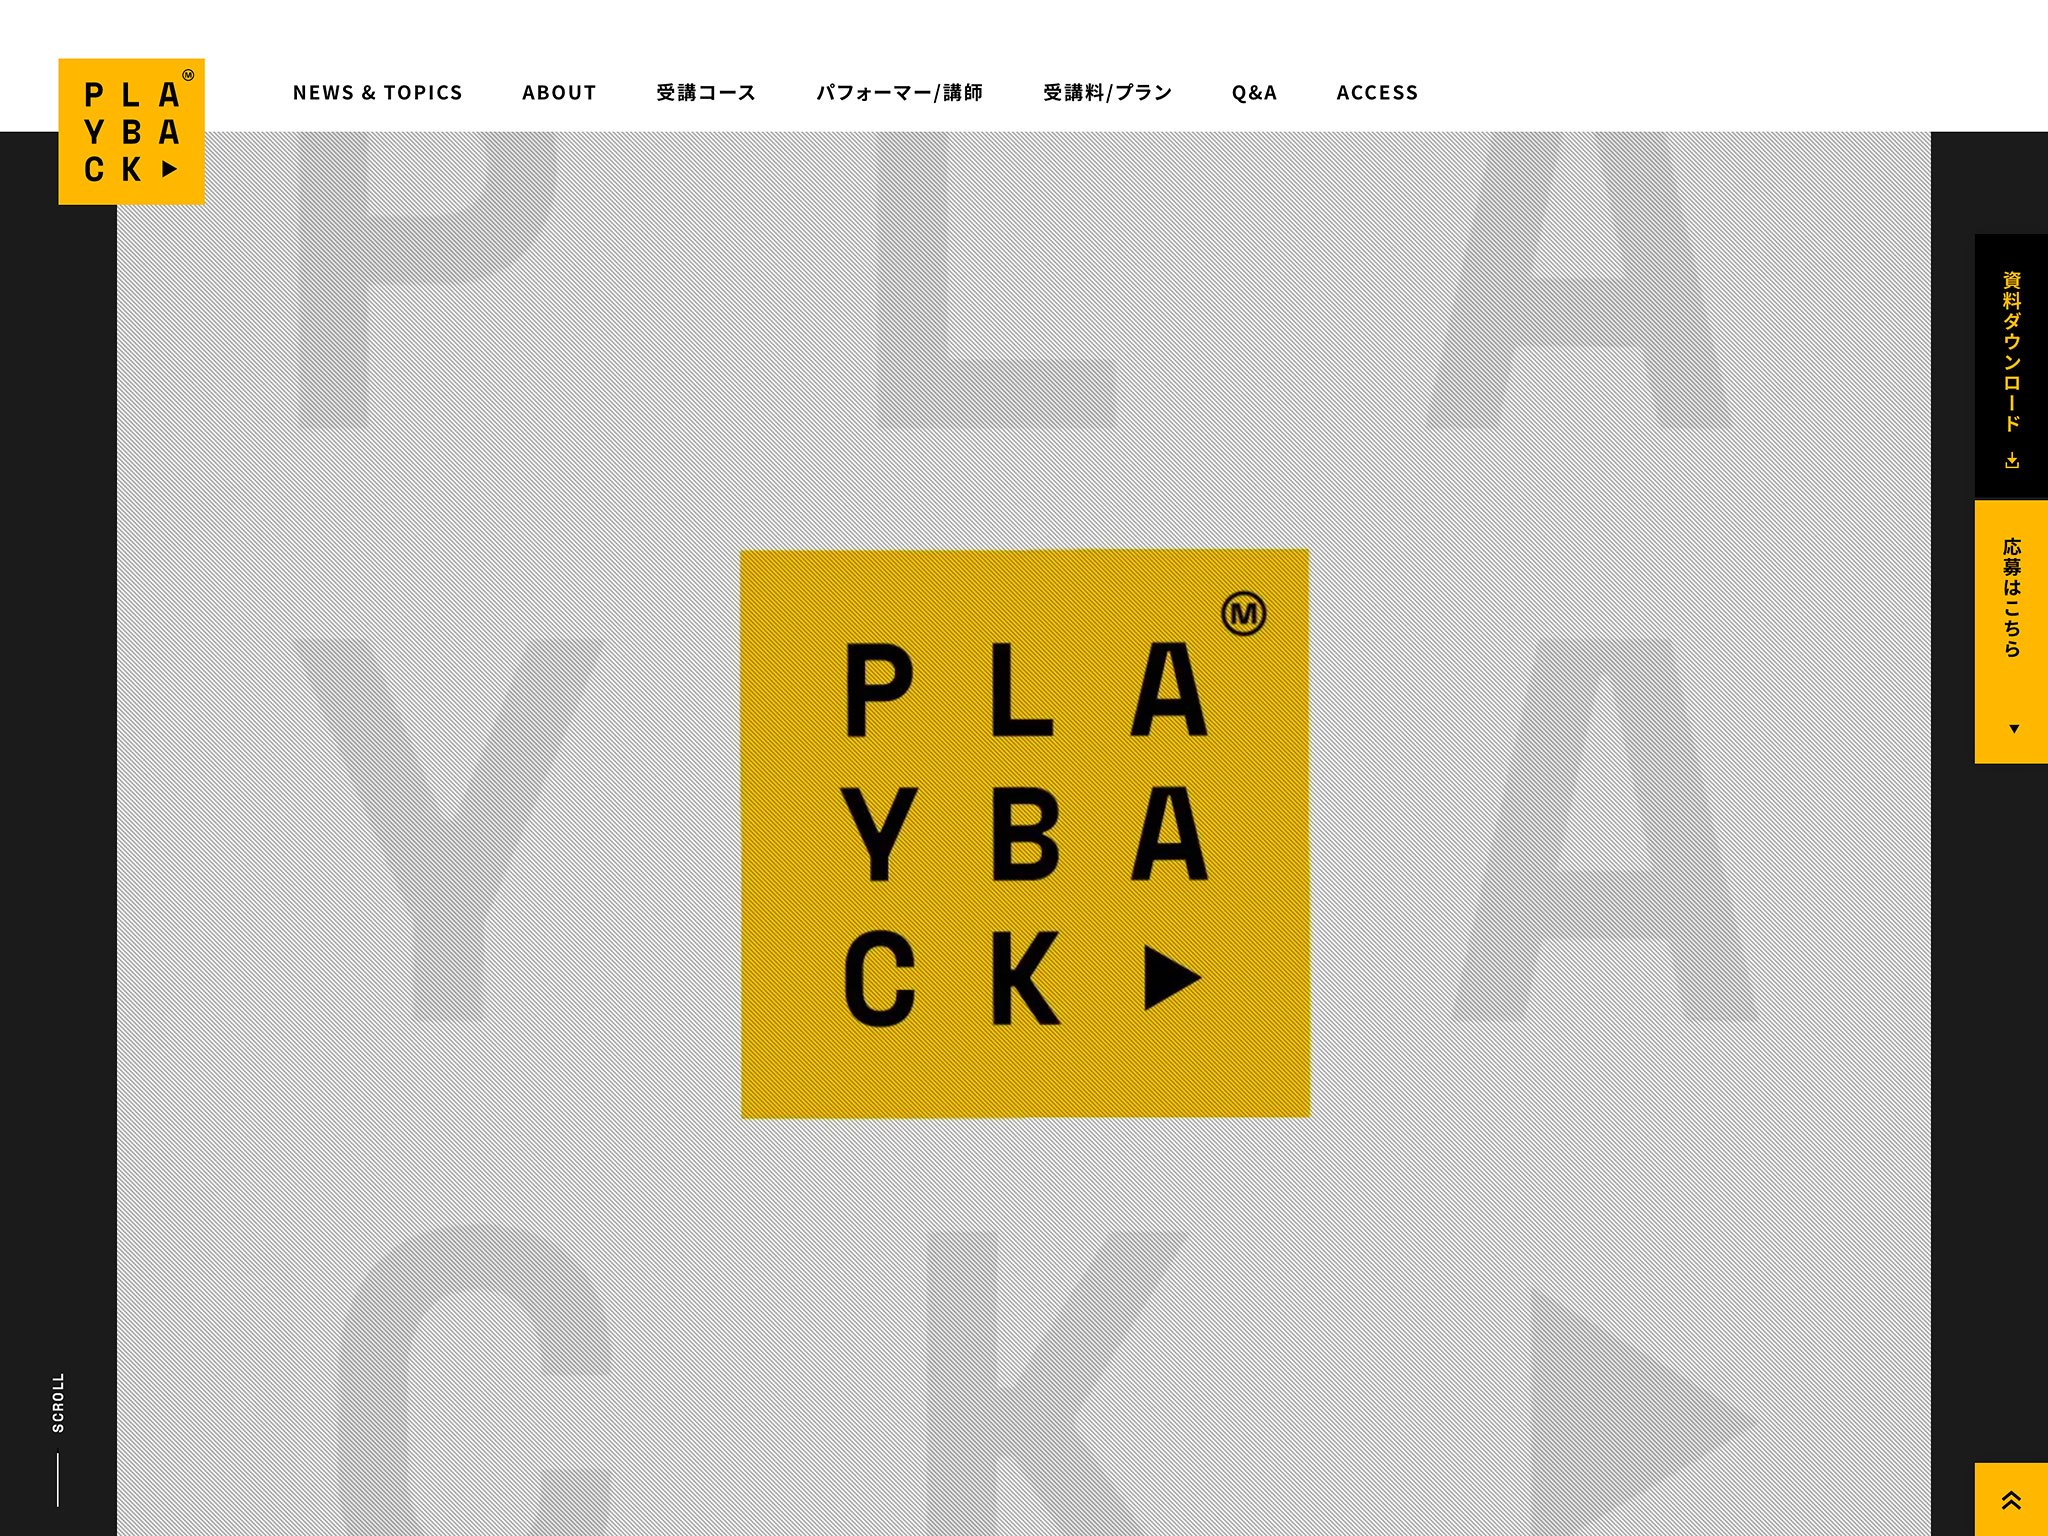 動画編集スクール『PLAYBACK』 | 著名タレントの動画素材を使って学ぶ業界初の動画編集スクール